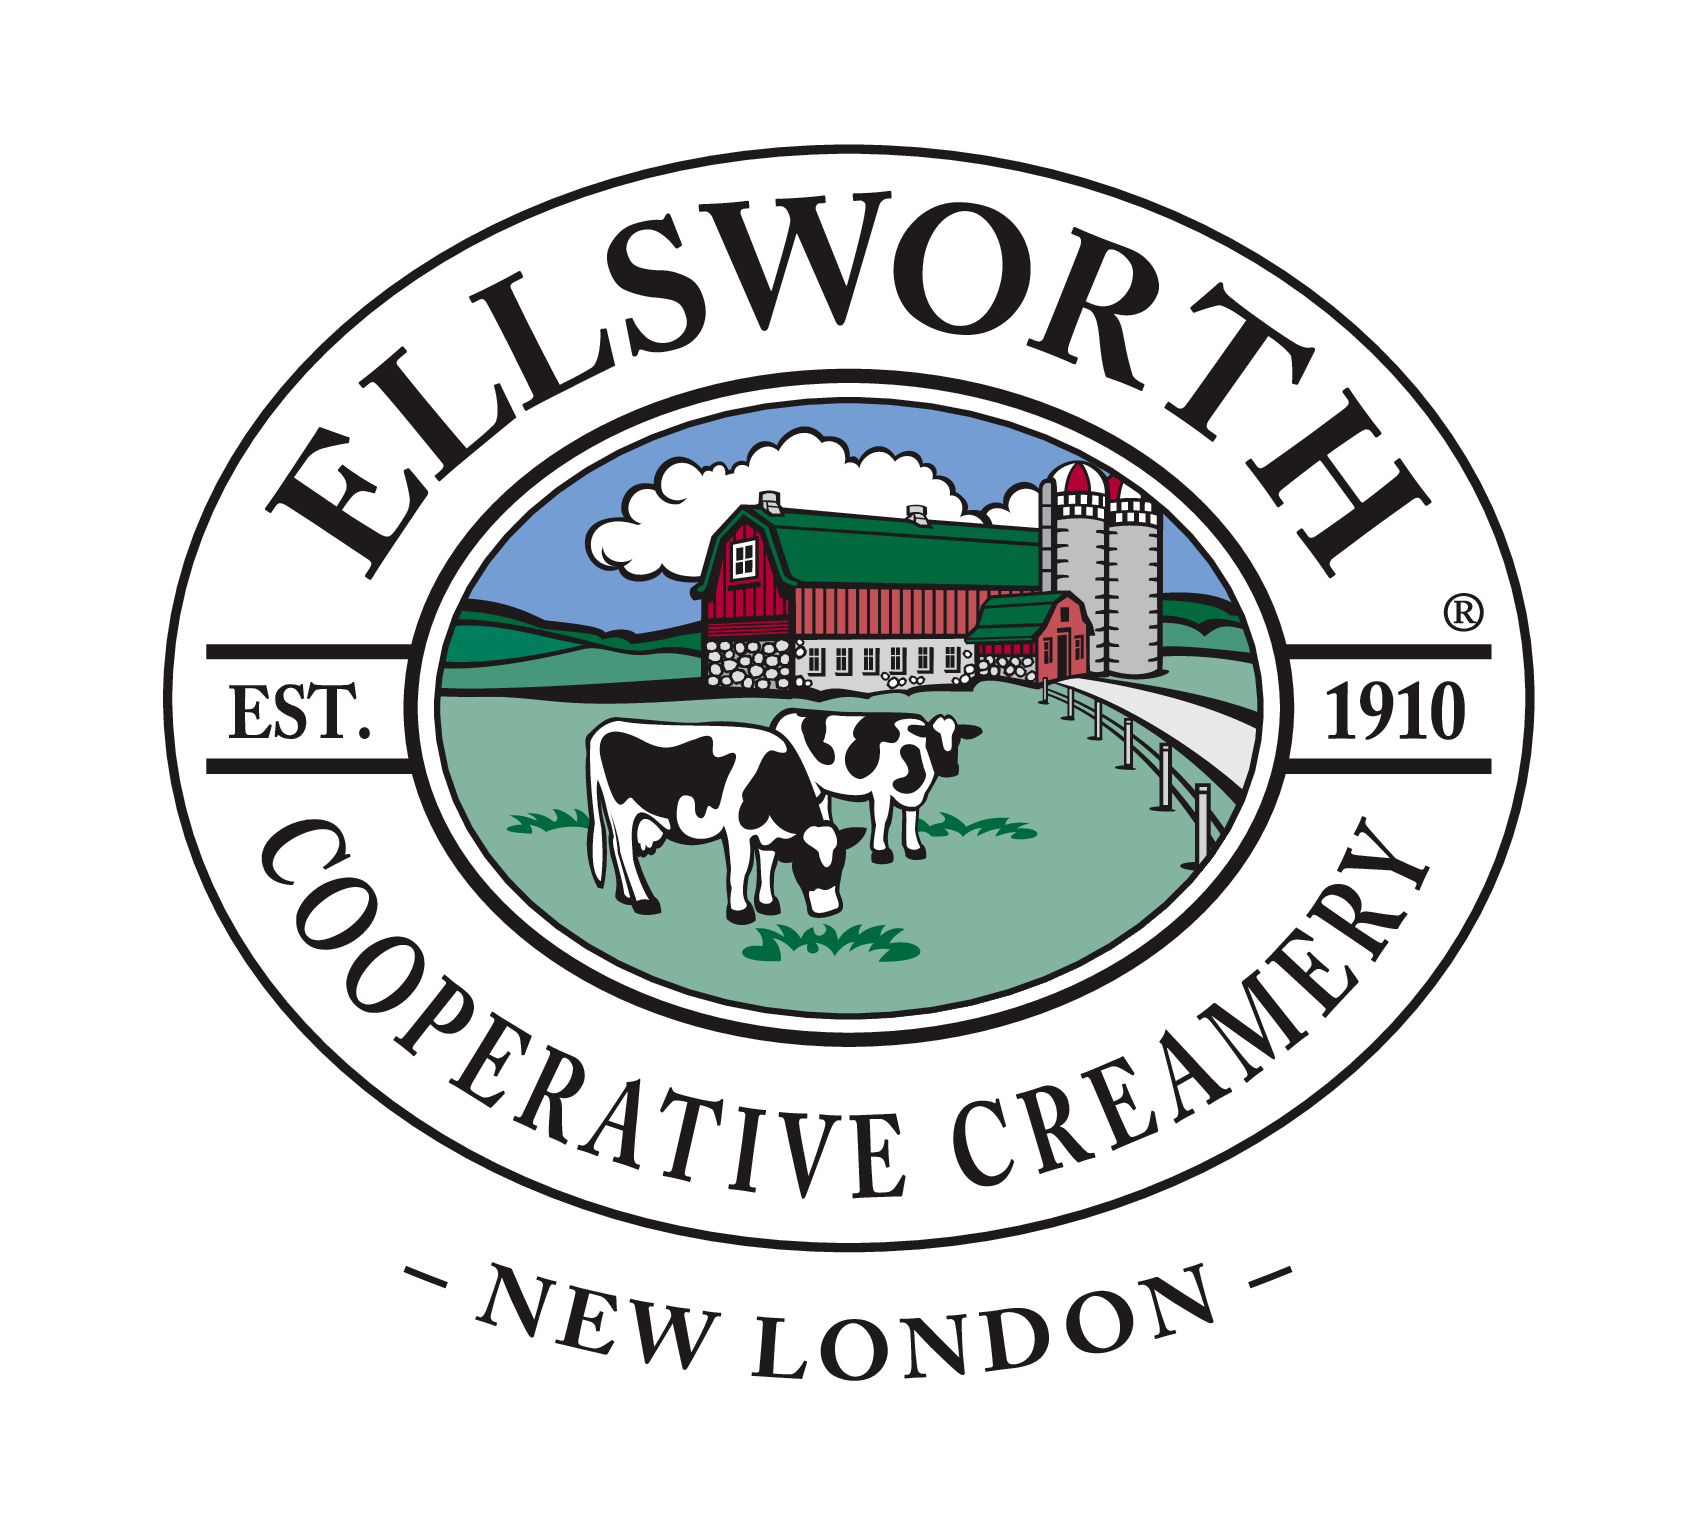 Ellsworth Cooperative Creamery